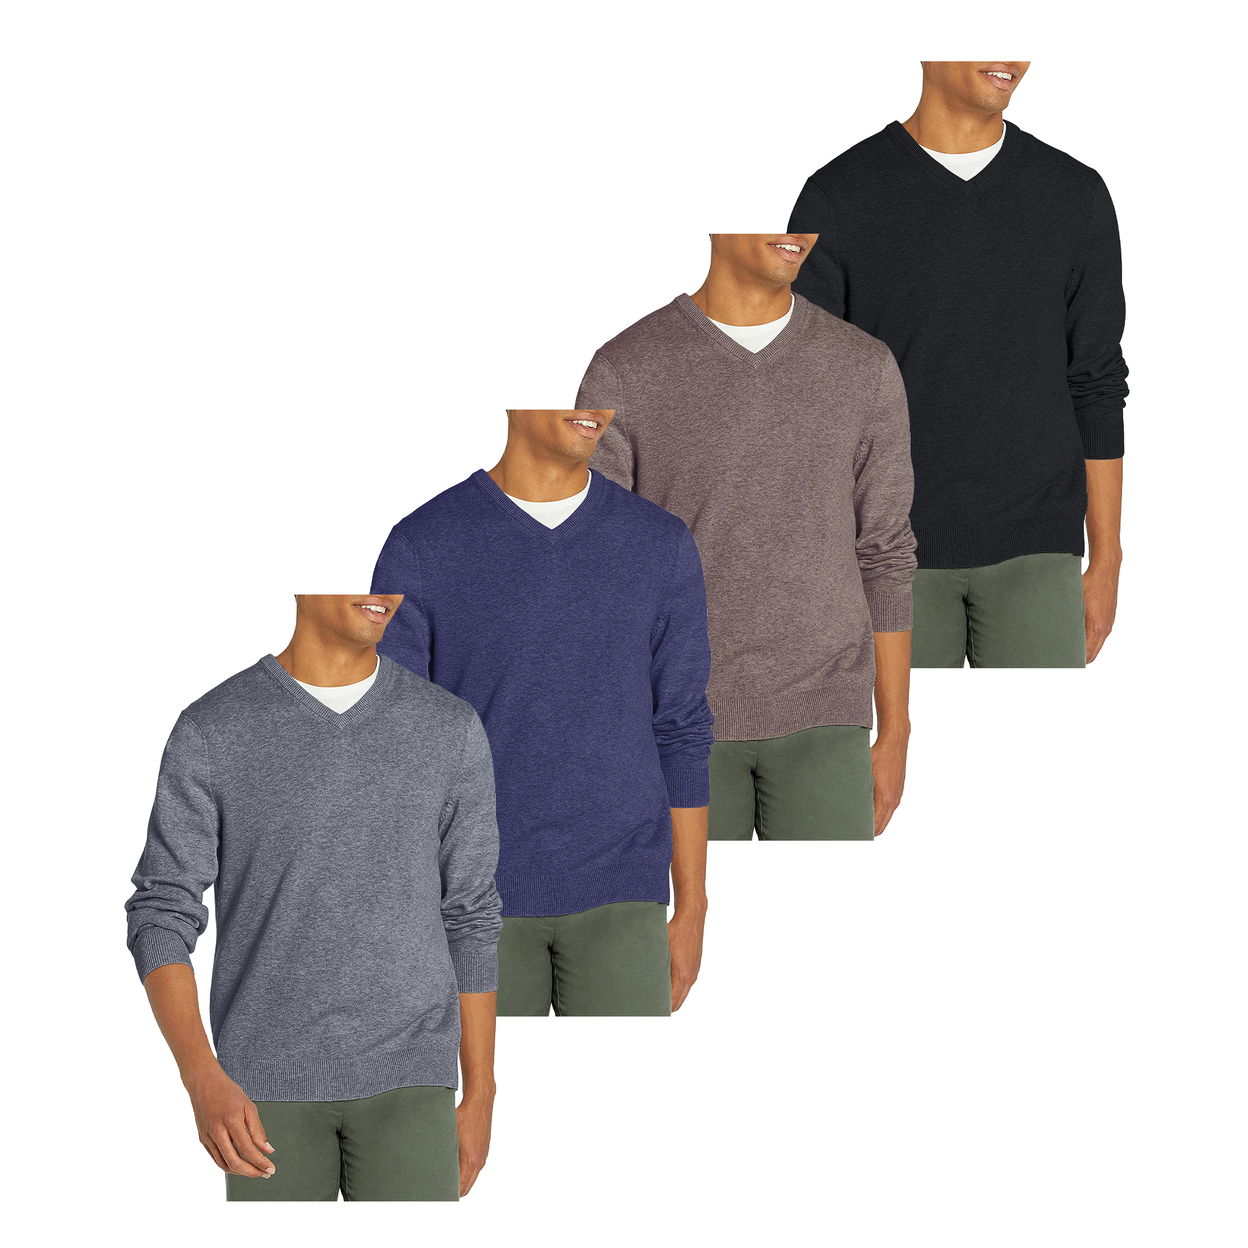 2-Pack: Men's Casual Ultra Soft Slim Fit Warm Knit V-Neck Sweater - Black & Blue, Large